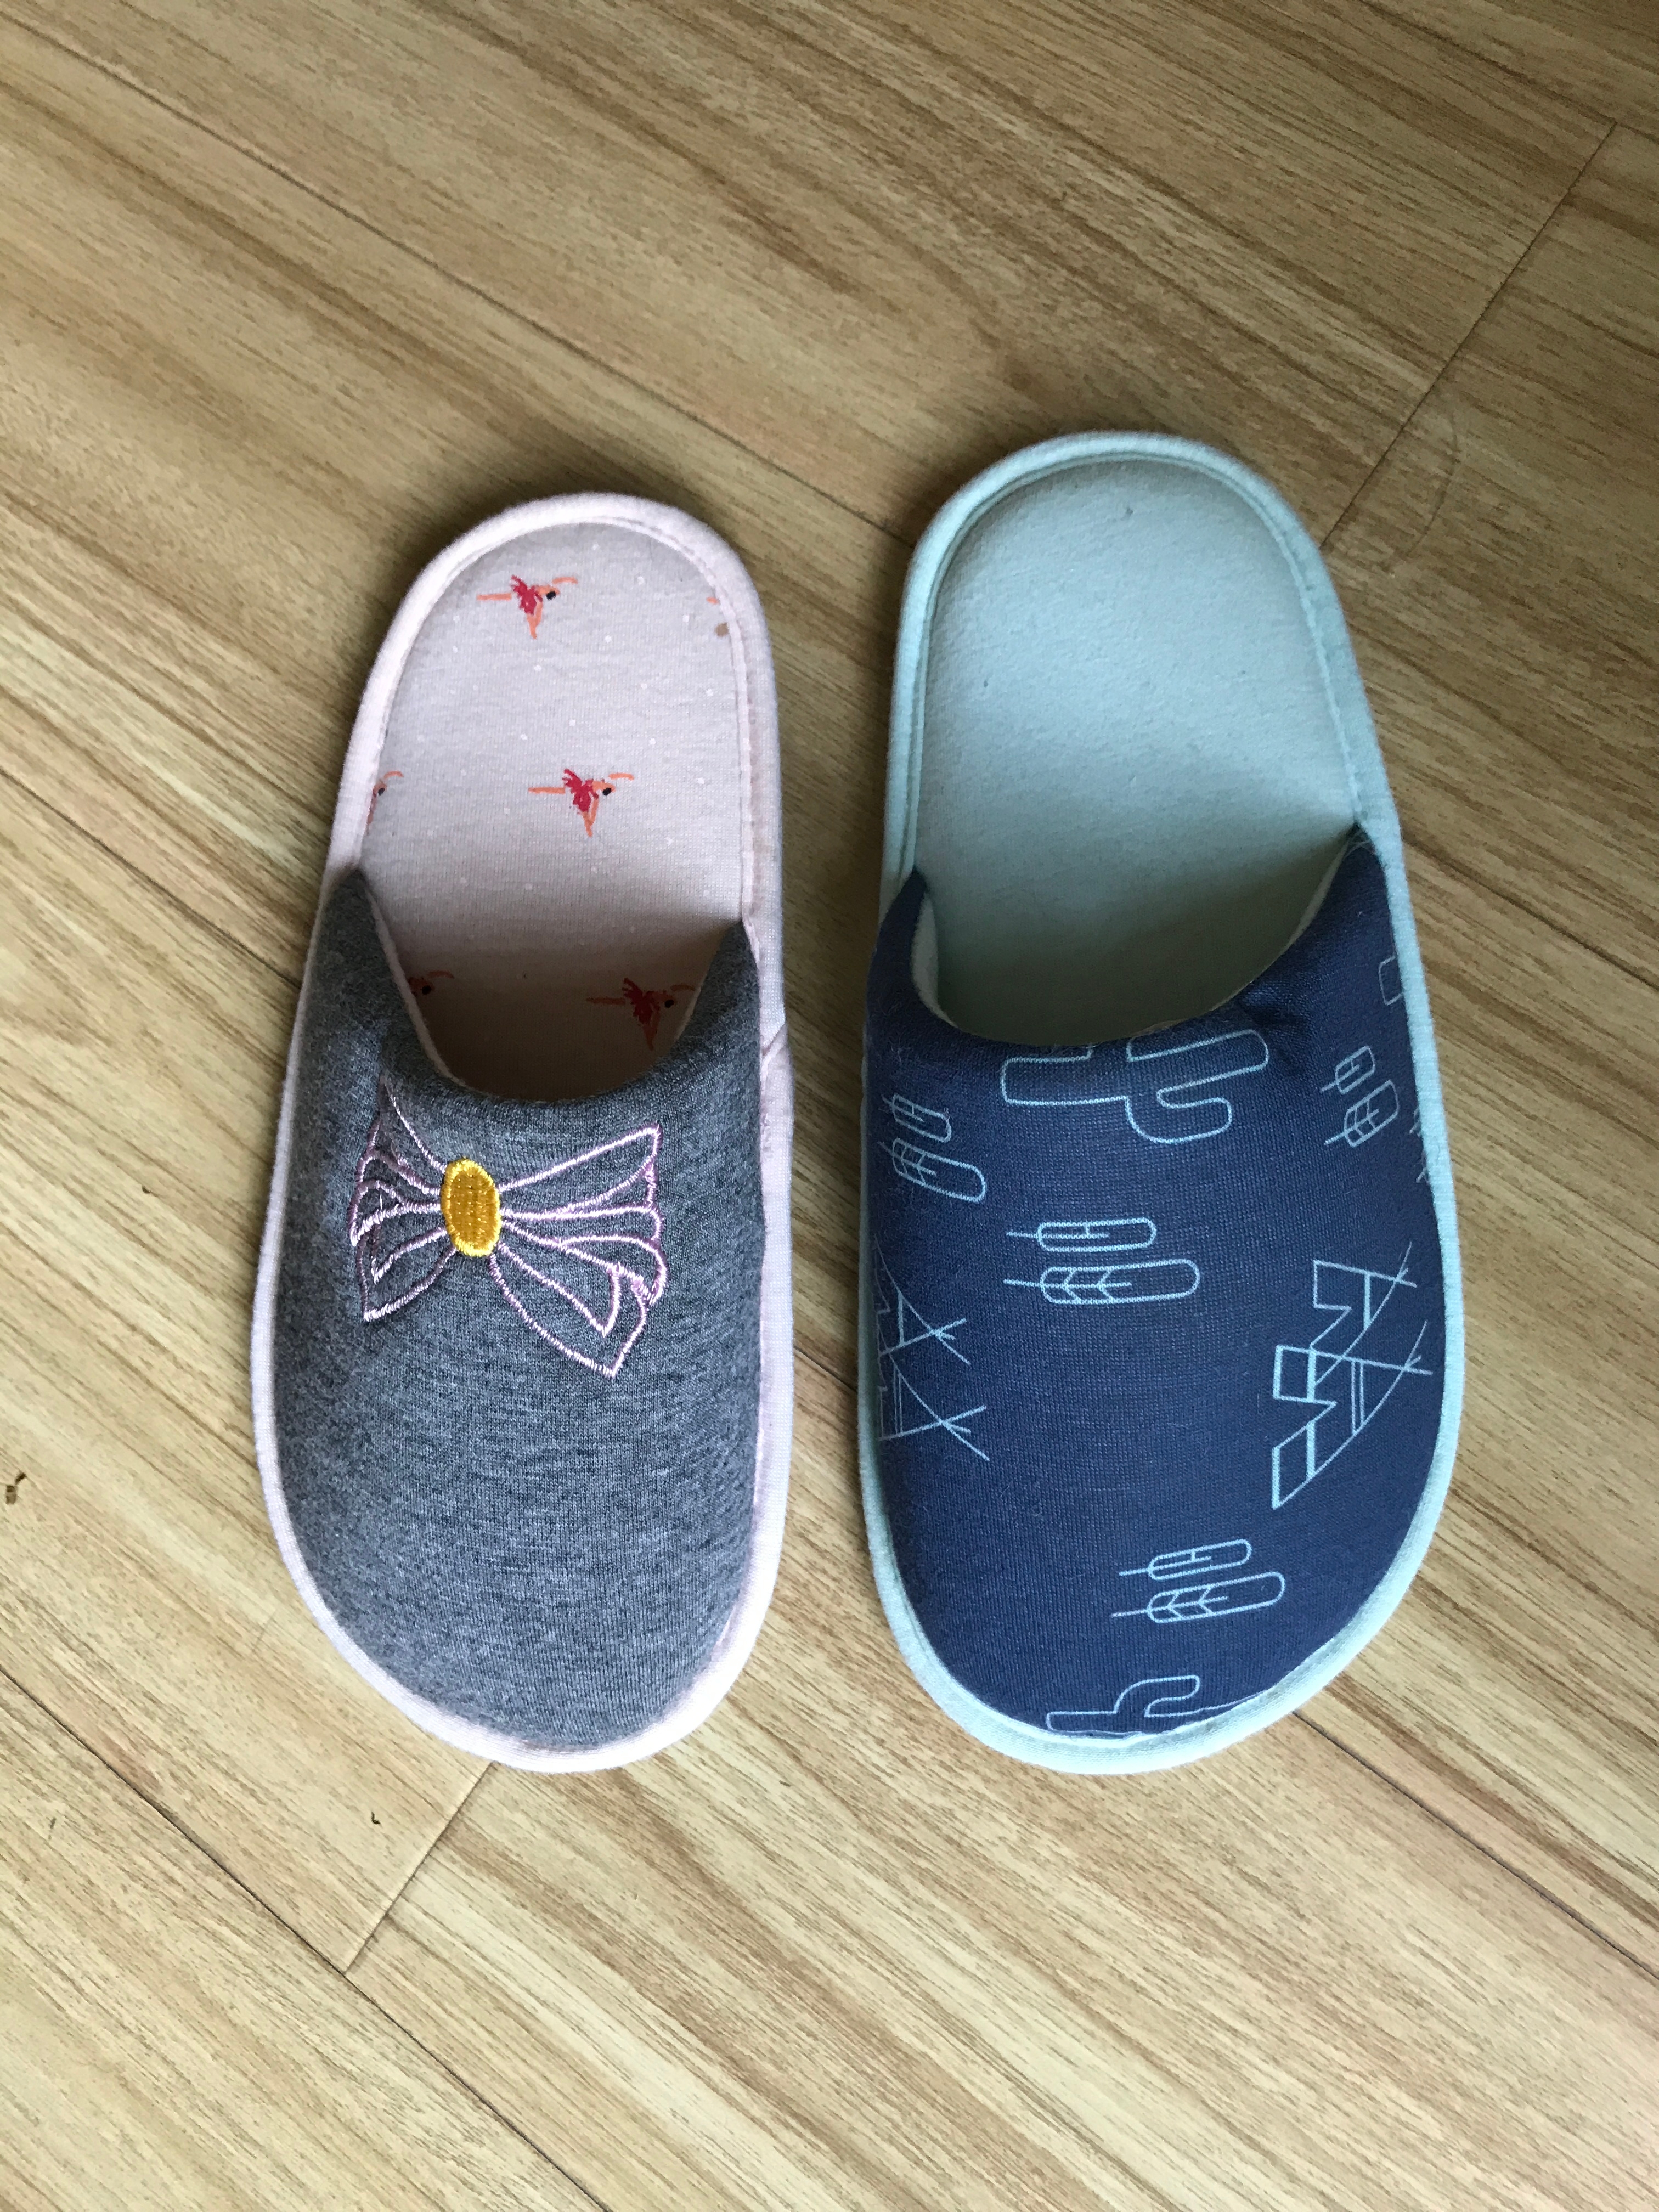 Children's Boy's Girls' Kid's Indoor Slippers 